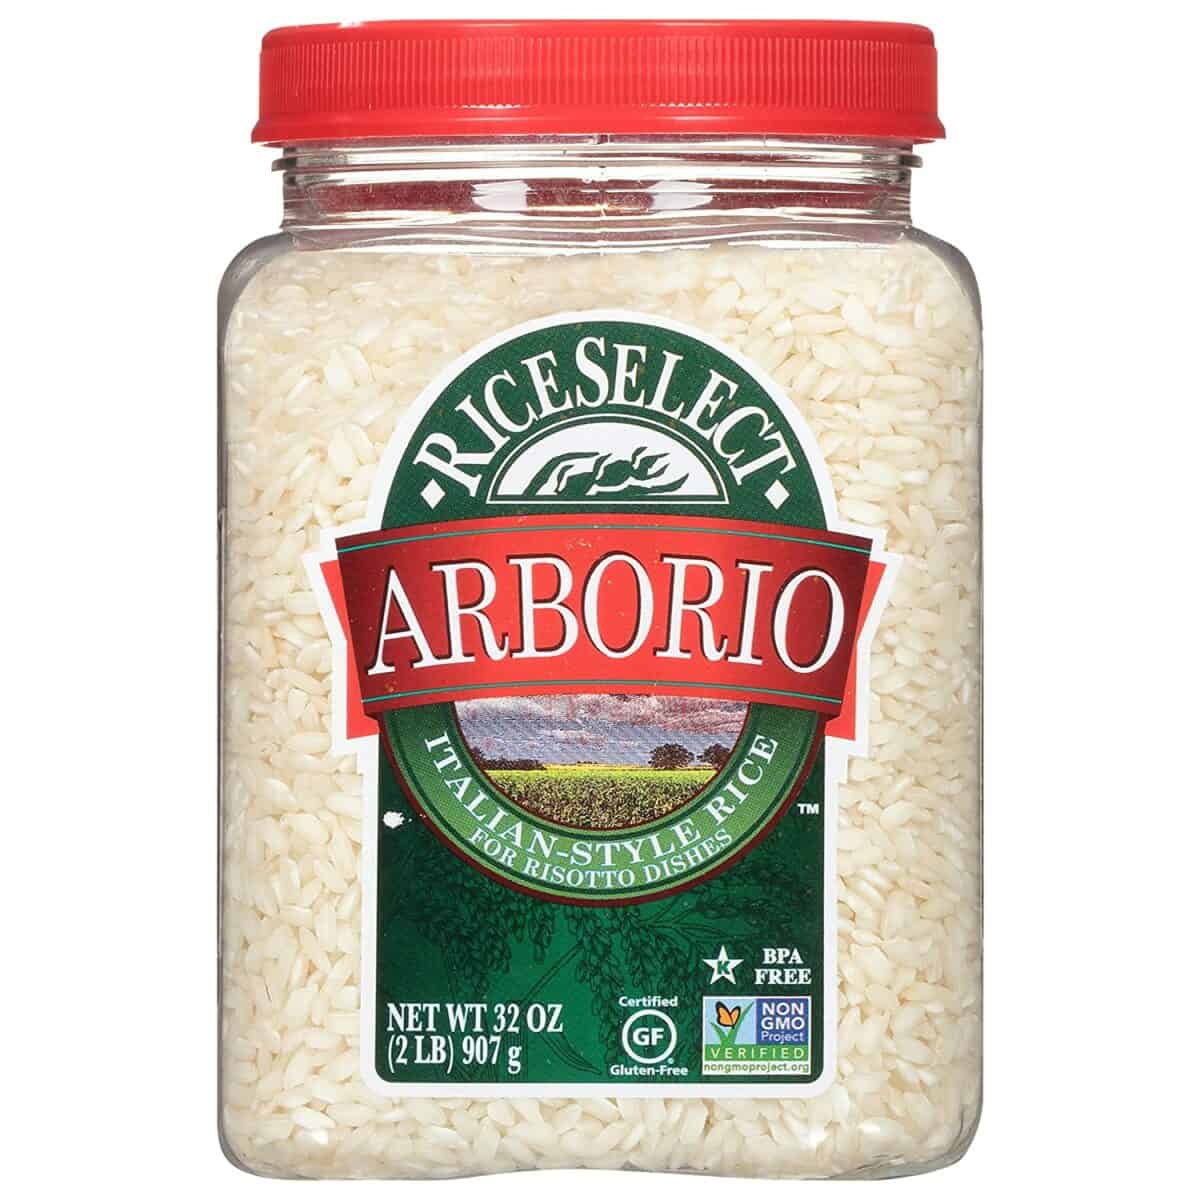 Arborio rīsi ir labs saldo lipīgo rīsu aizstājējs